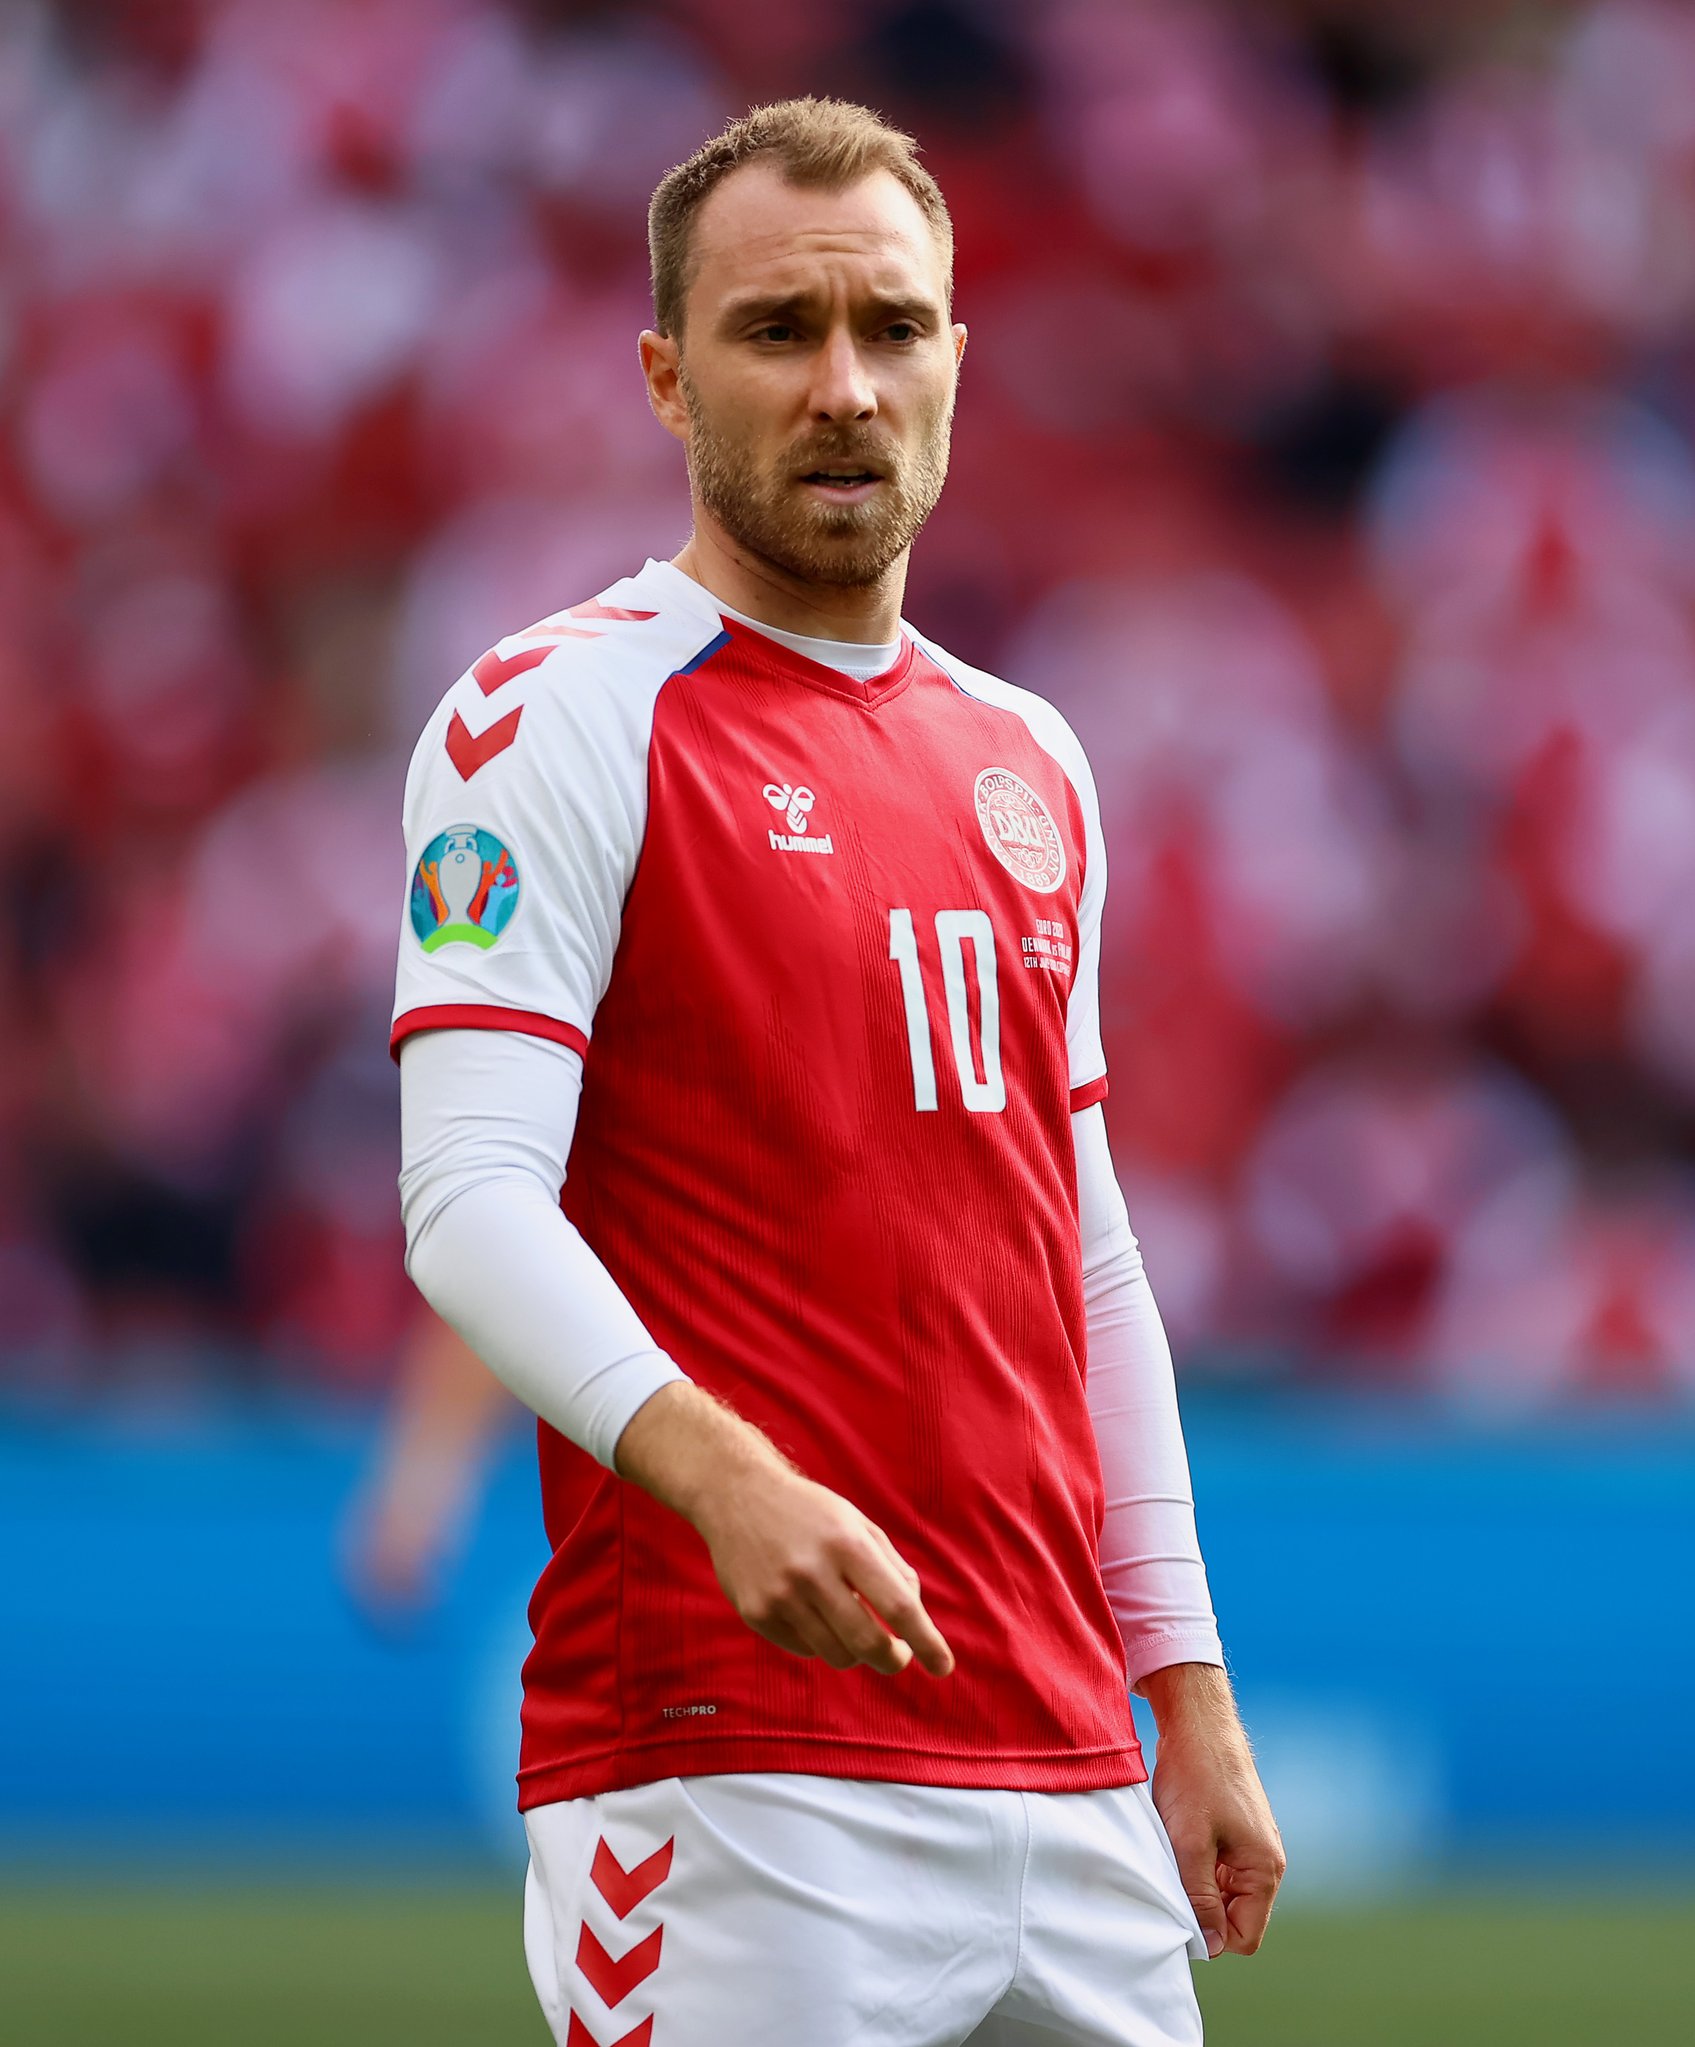 Danemark - Finlande (0-1) : L'UEFA décerne le trophée d'homme du match à Christian Eriksen, victime d’un malaise cardiaque en plein match…